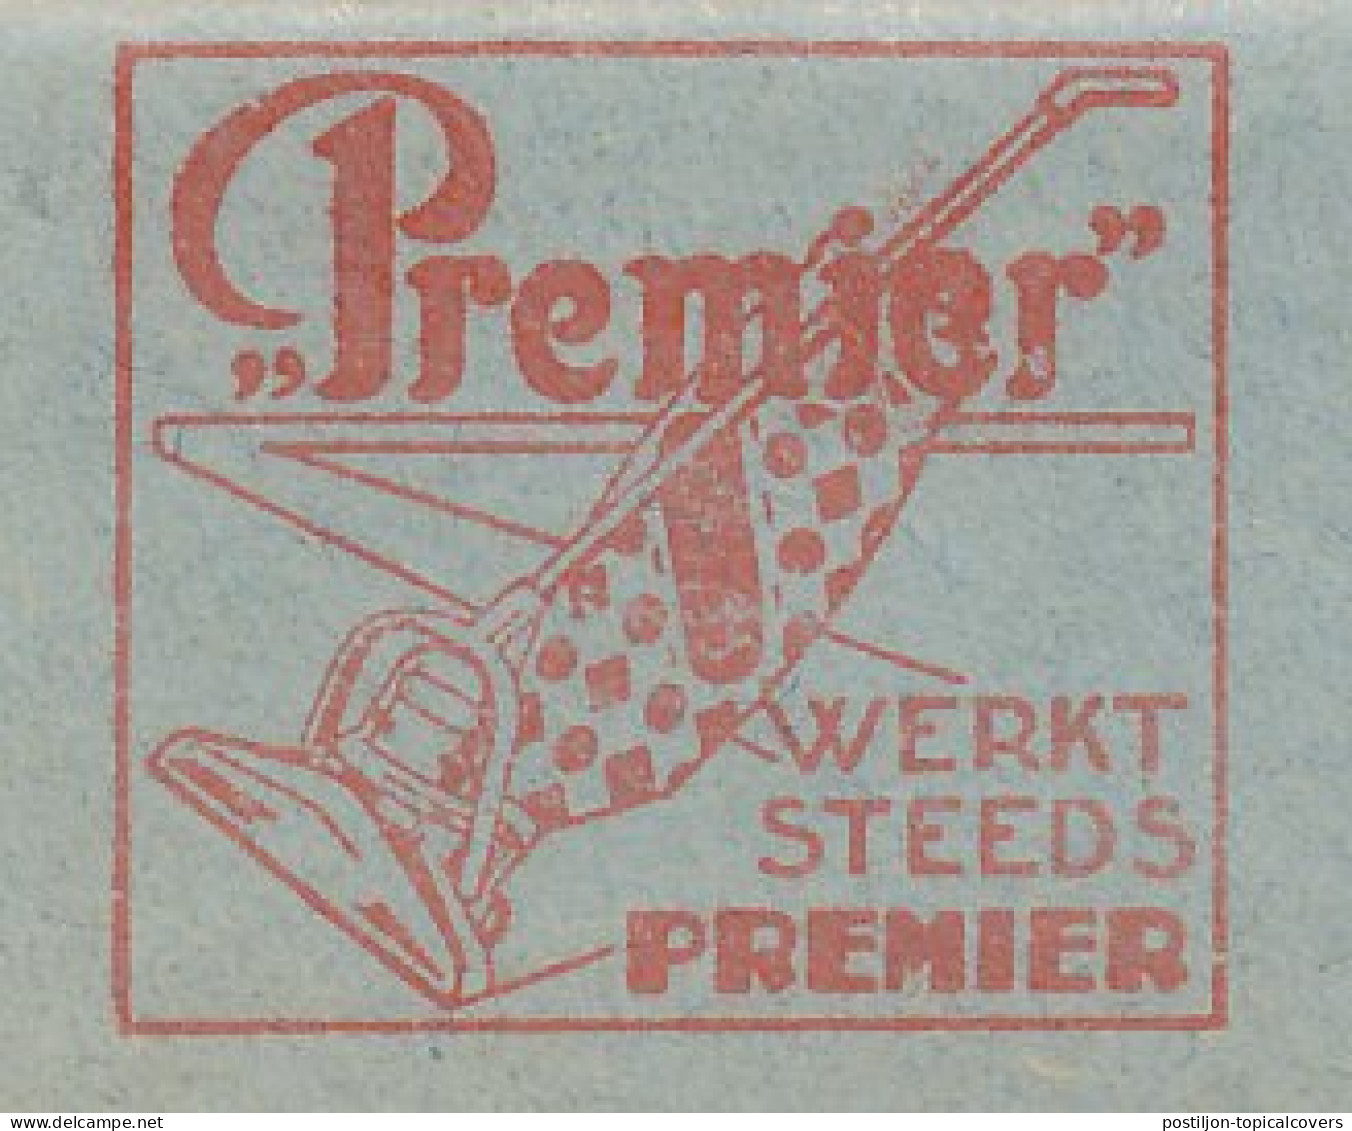 Meter Cut Netherlands 1937 Vacuum Cleaner - Premier - Ohne Zuordnung